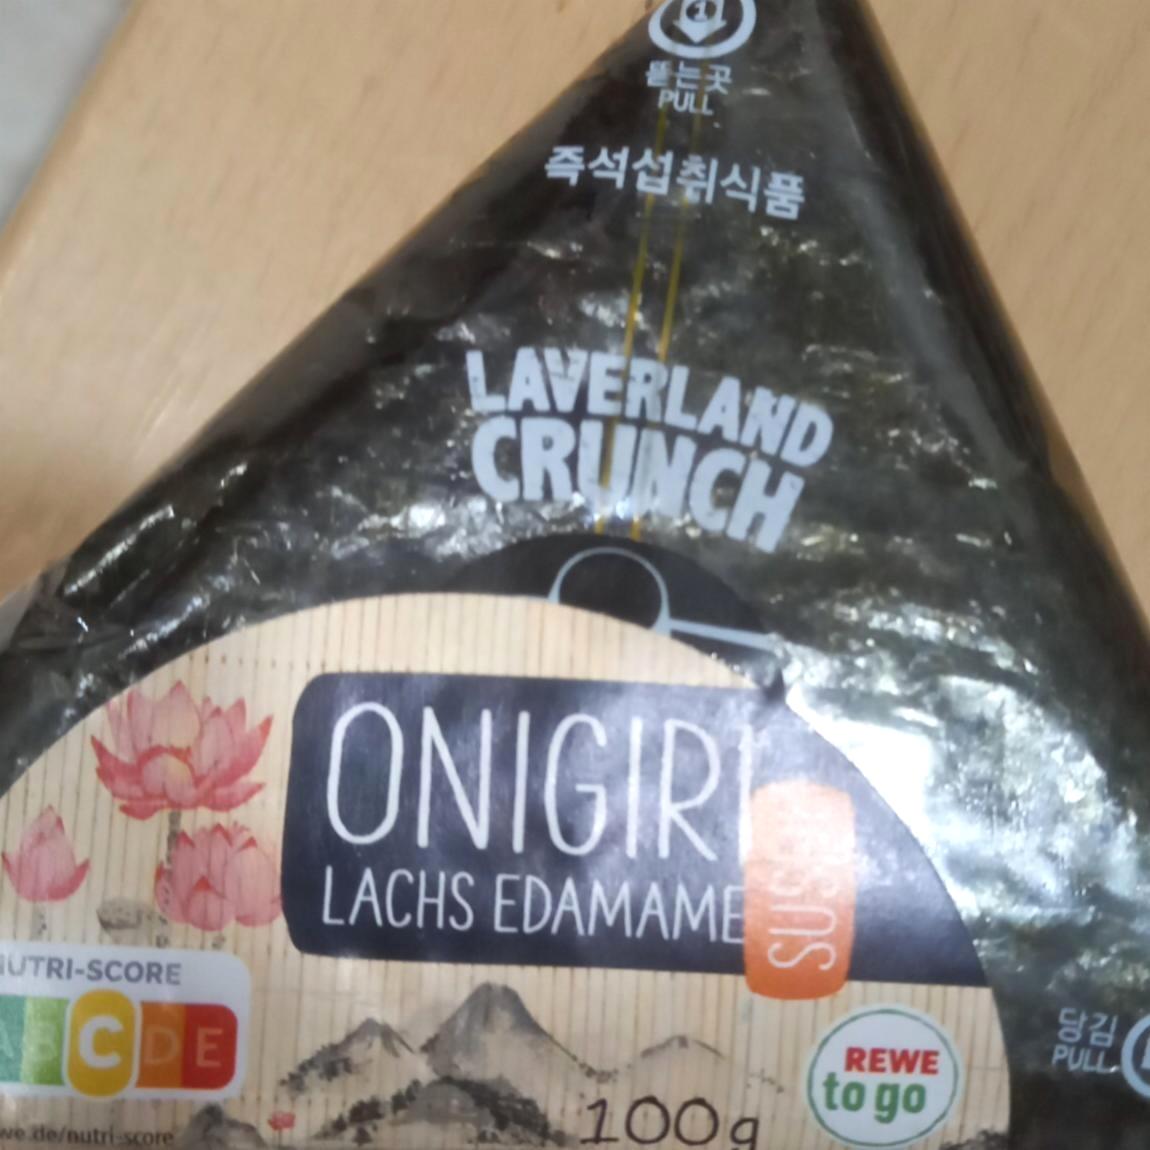 Fotografie - Onigiri lachs edamame Laverland crunch